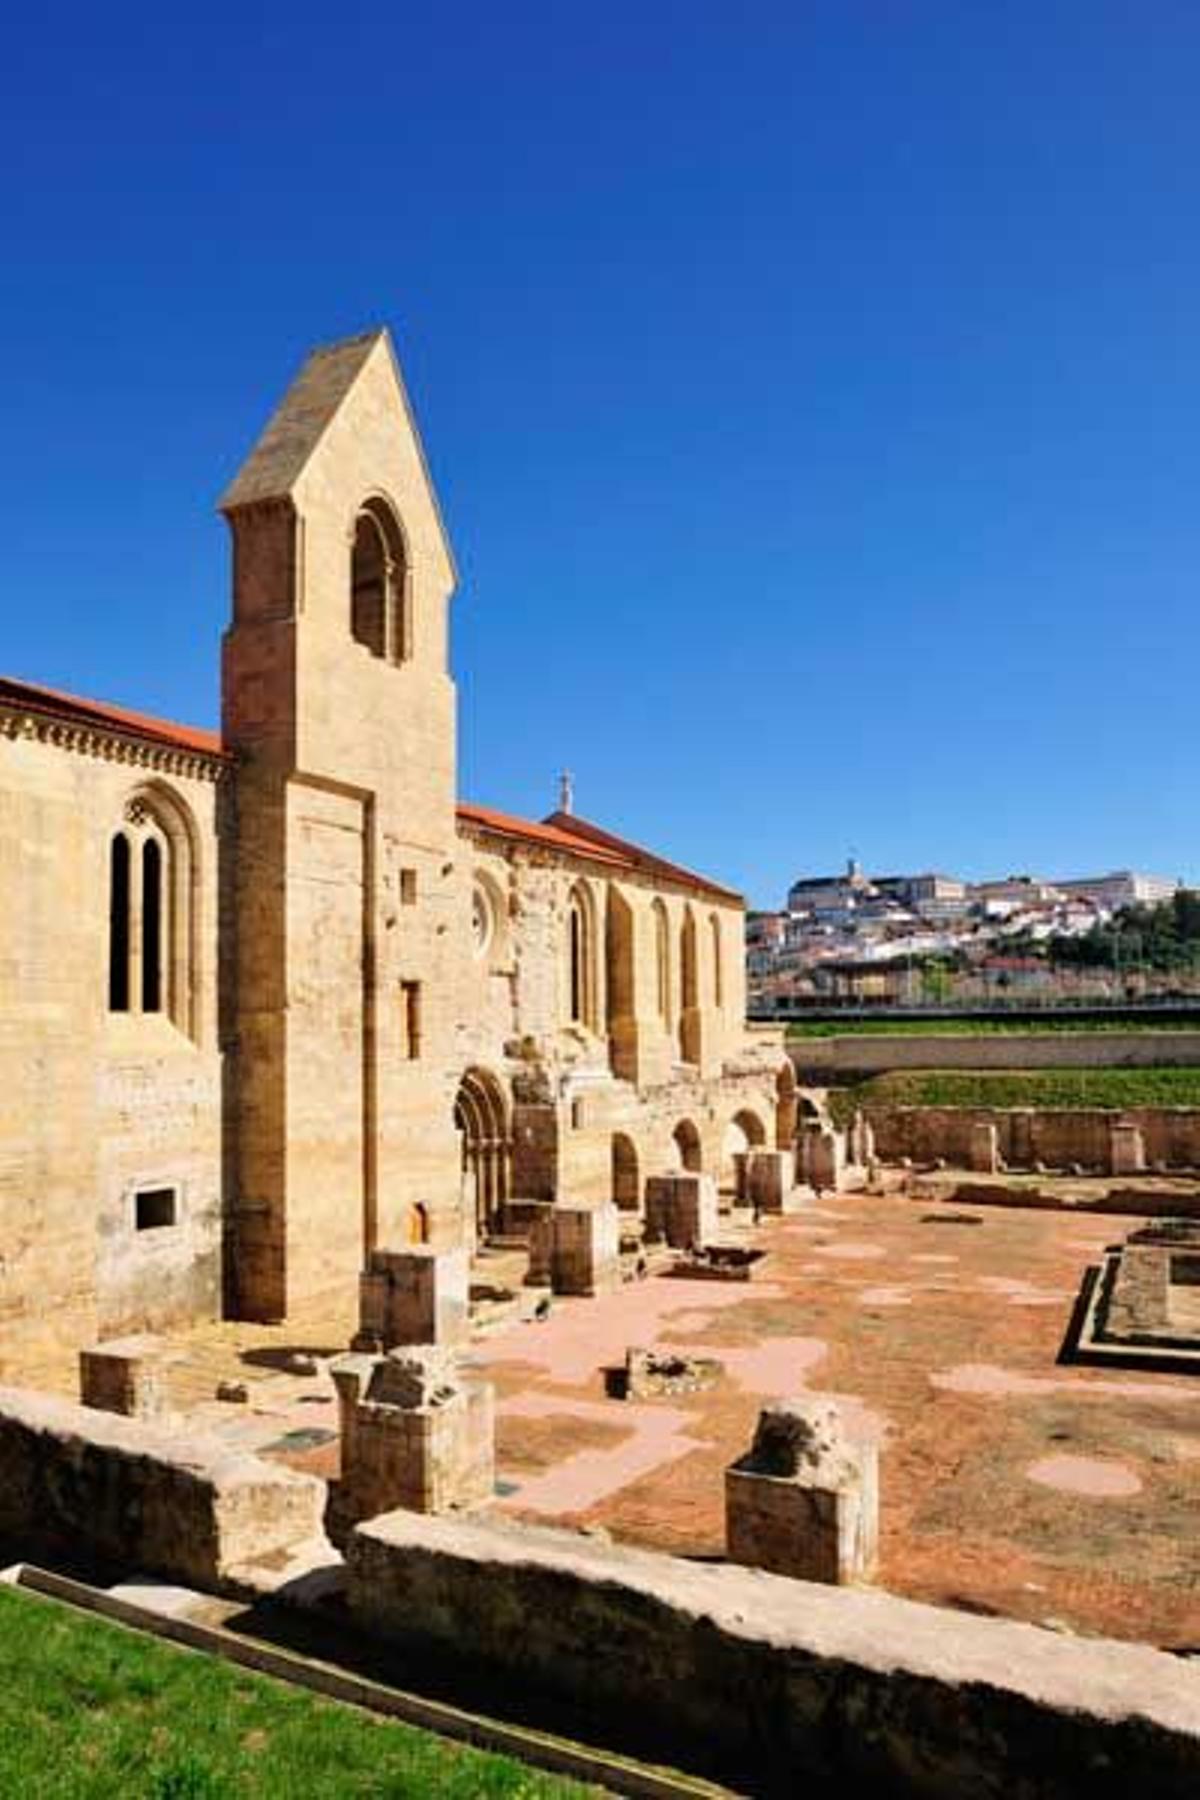 Monasterio gótico de Santa Cala a Velha de Coimbra.